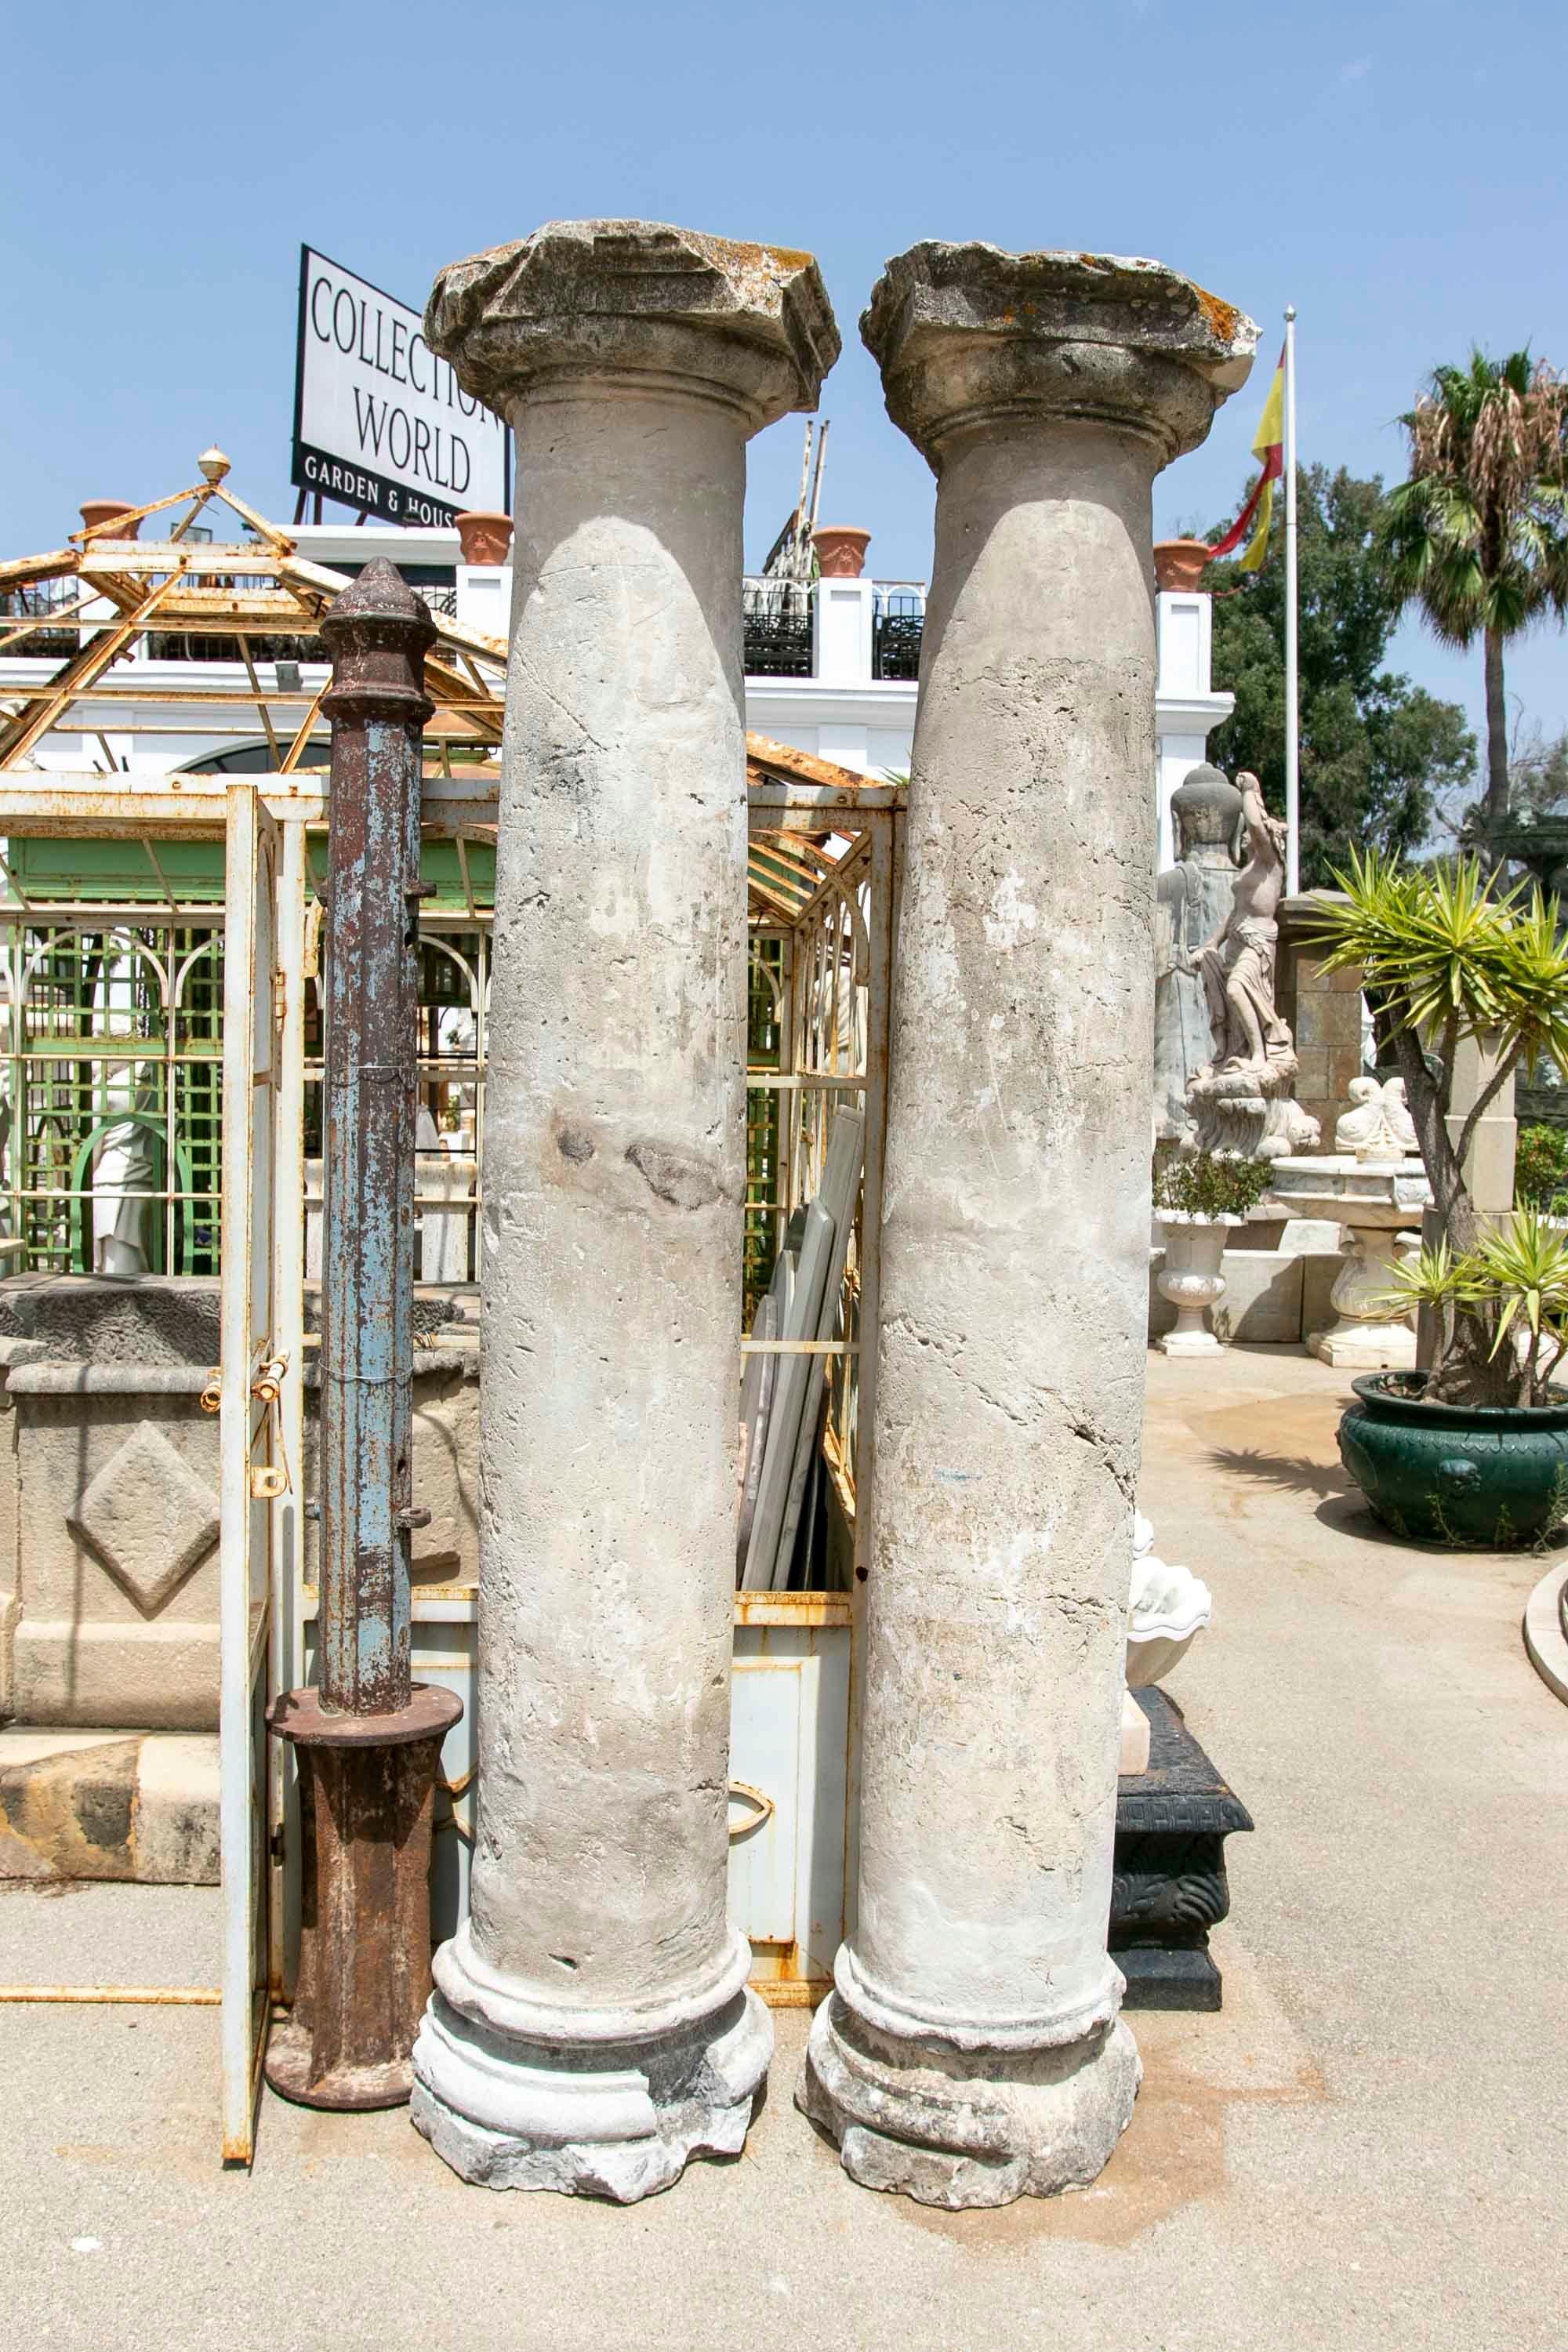 Ensemble de quatre colonnes de pierre de style toscan du 16e-17e siècle en Espagne 

Les mesures des colonnes, de gauche à droite, sont les suivantes :

-260x51x51cm
-242x46x46cm
-268x50x50cm
-268x50x50cm